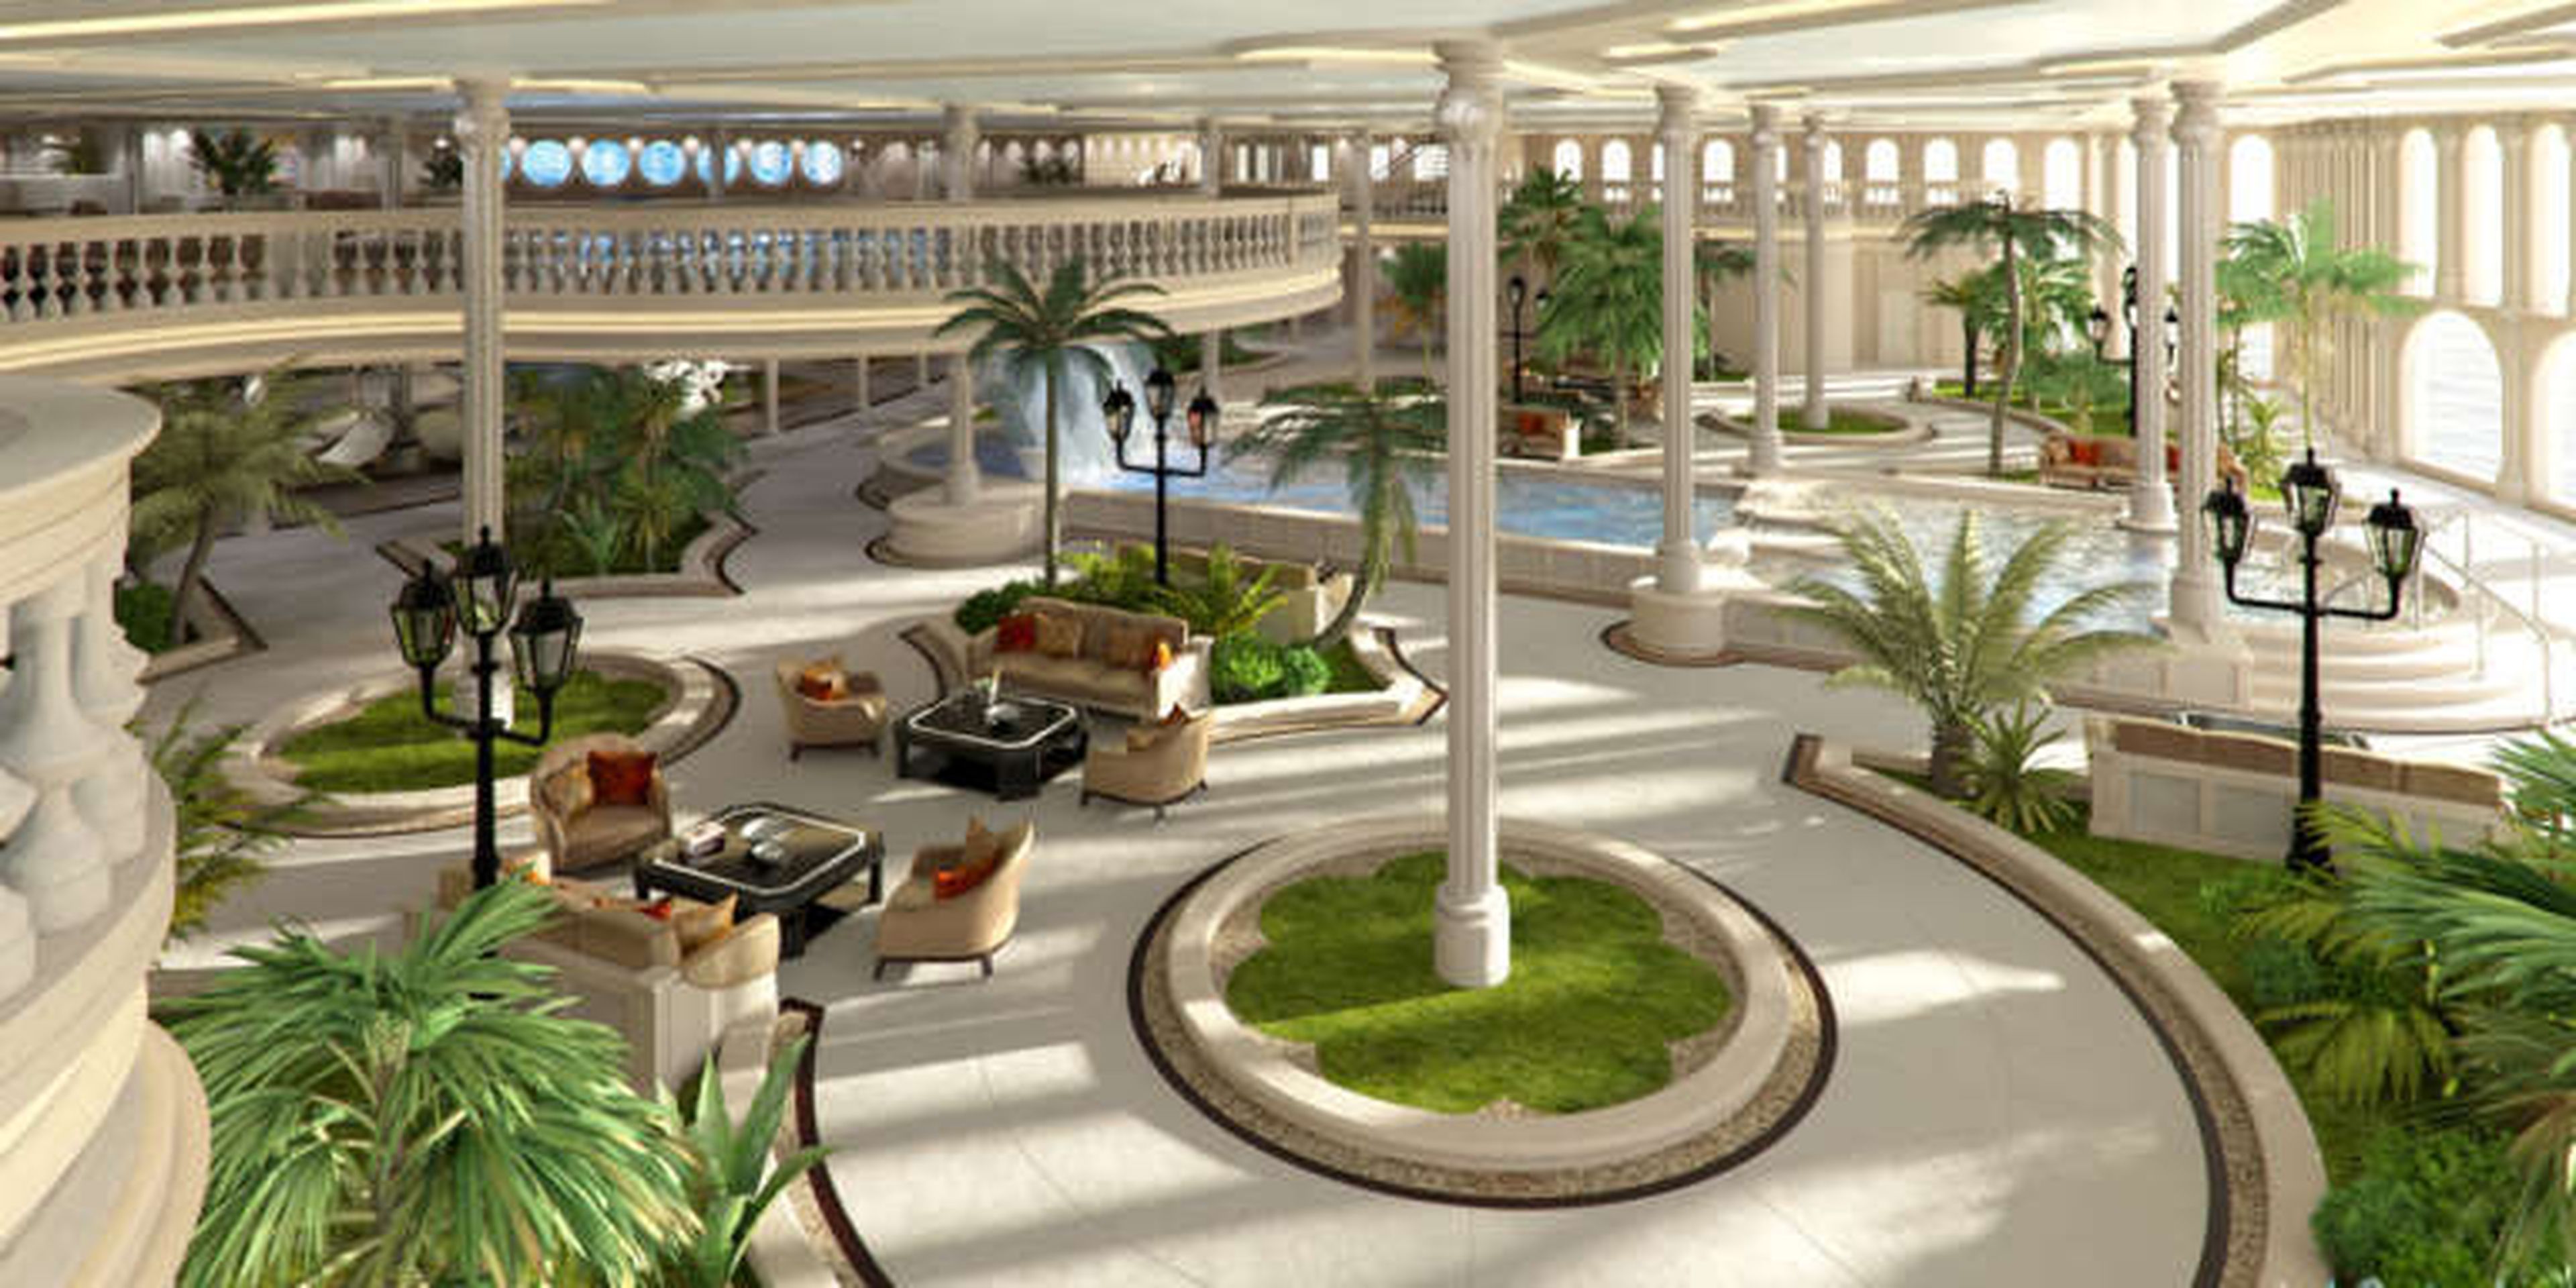 El sector del Oasis replica los jardines del Casino de Mónaco.